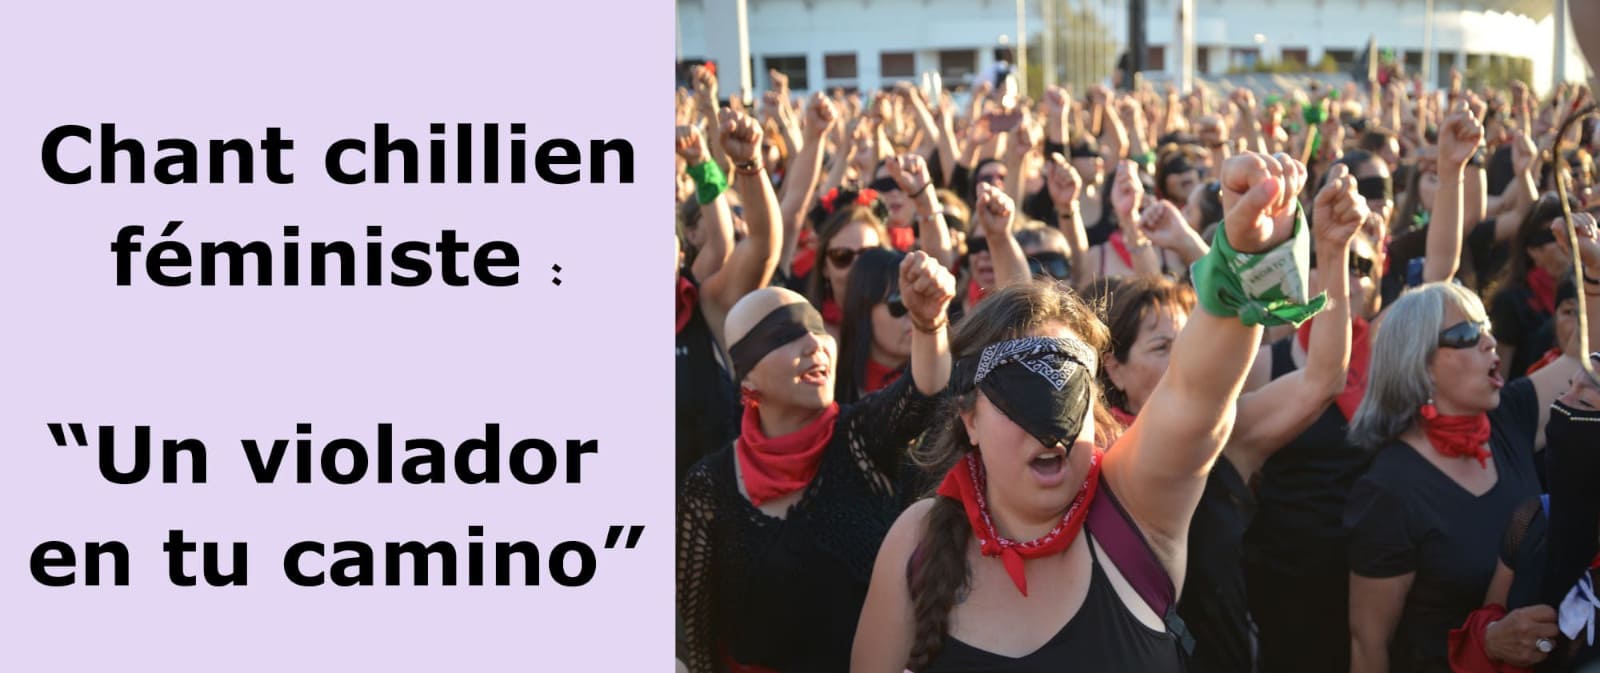 chant des chiliennes contre les violences